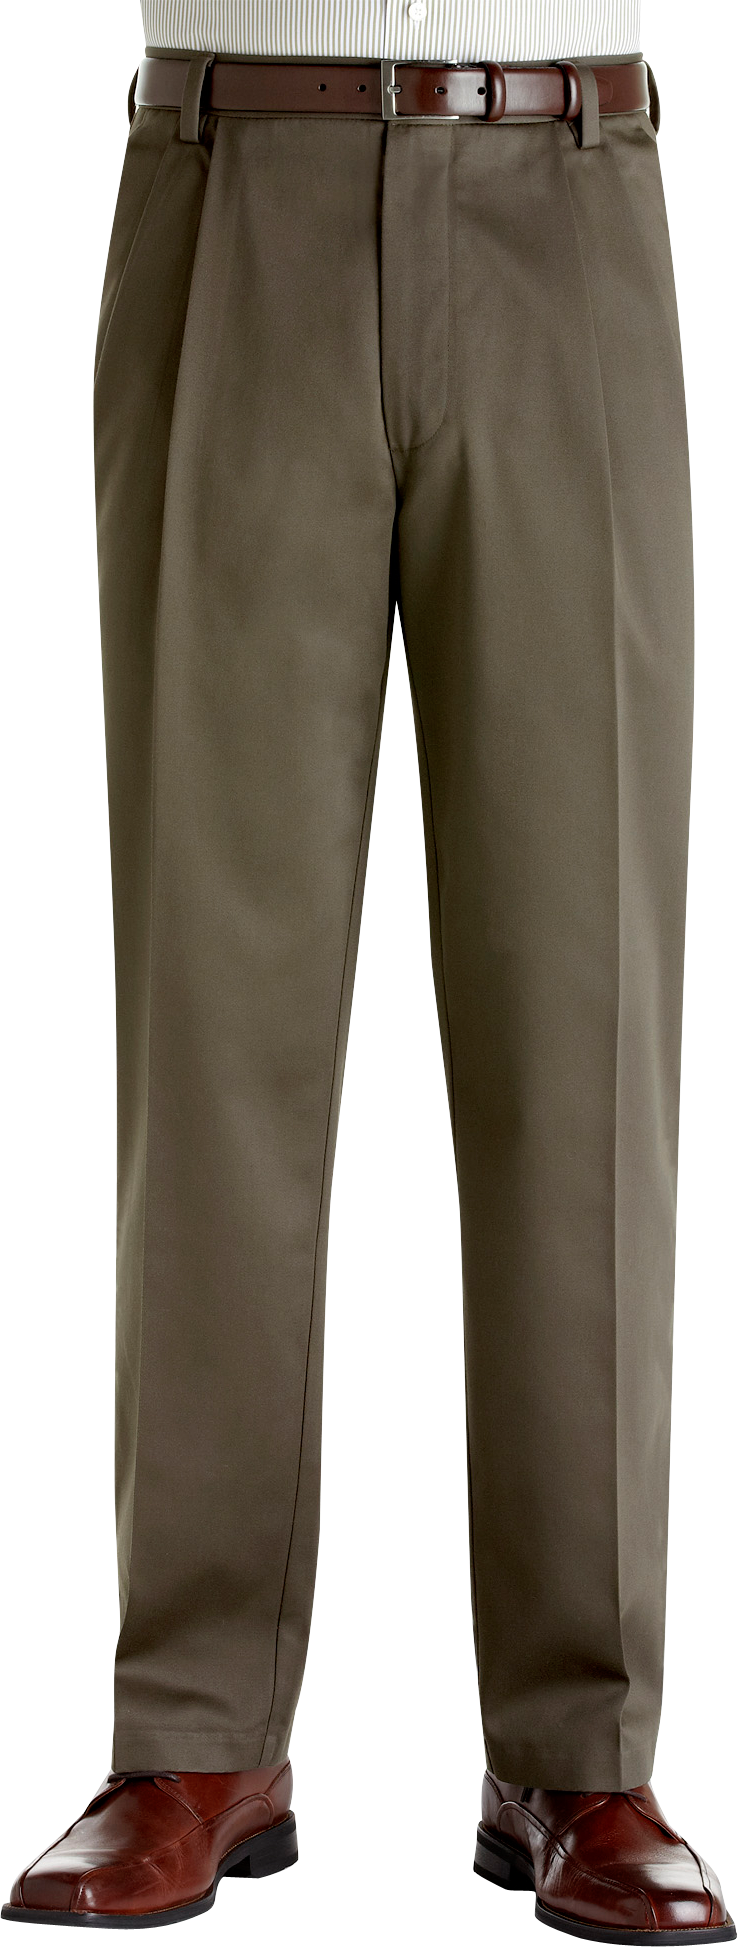 Dockers® Essential Khaki Olive Cotton Pleated Pants - Men's Pants | Men ...